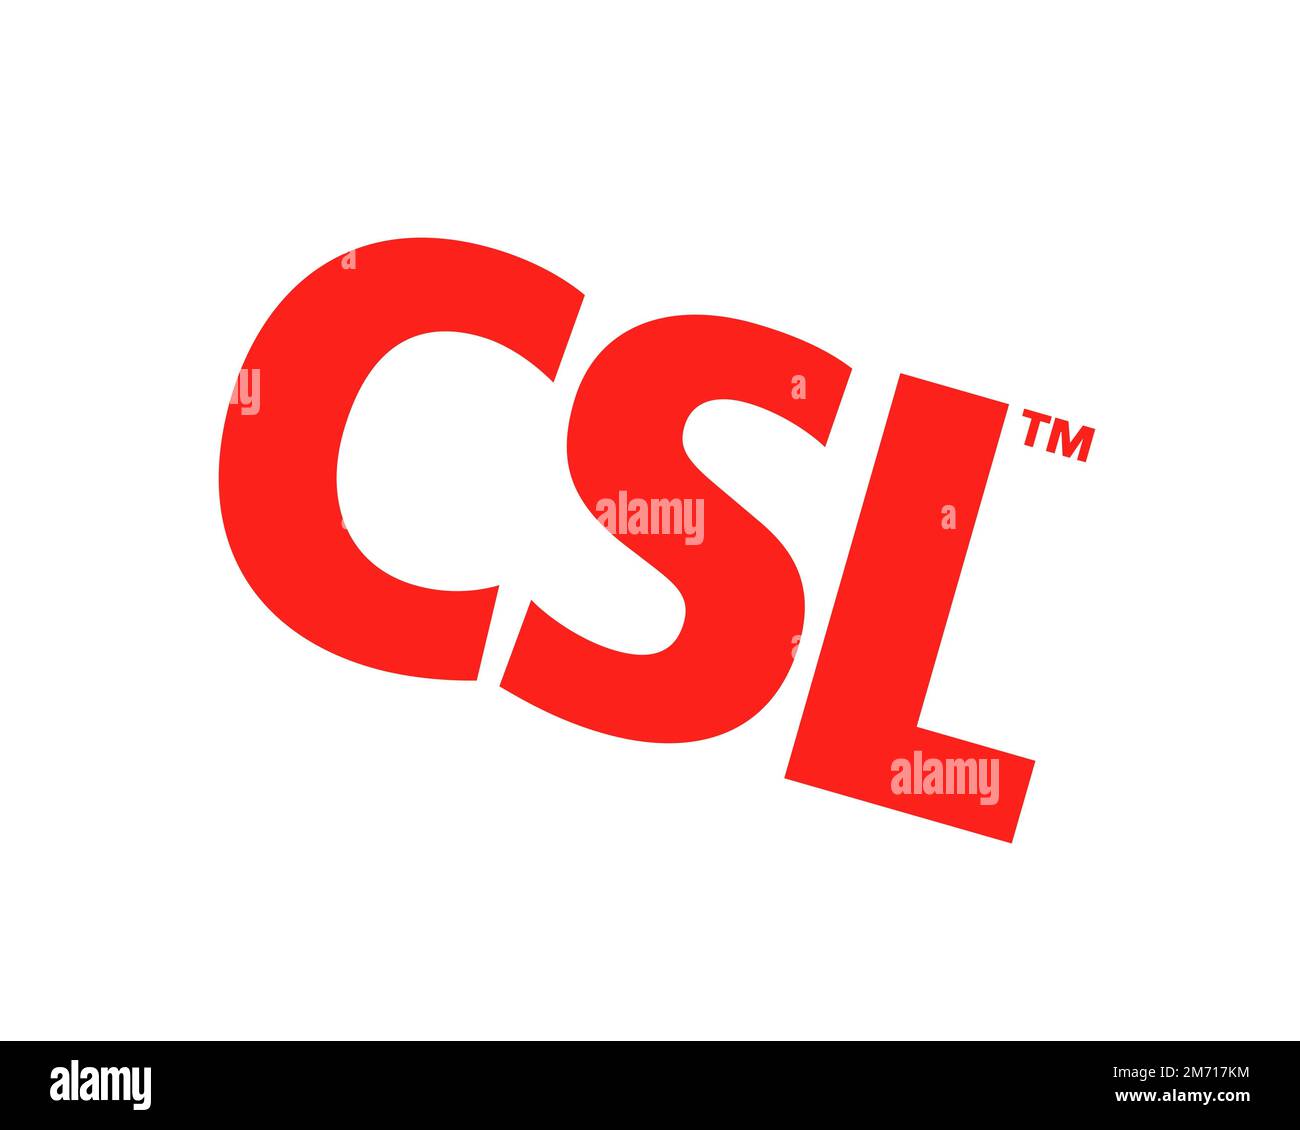 CSL Limited, logo pivoté, fond blanc B Banque D'Images